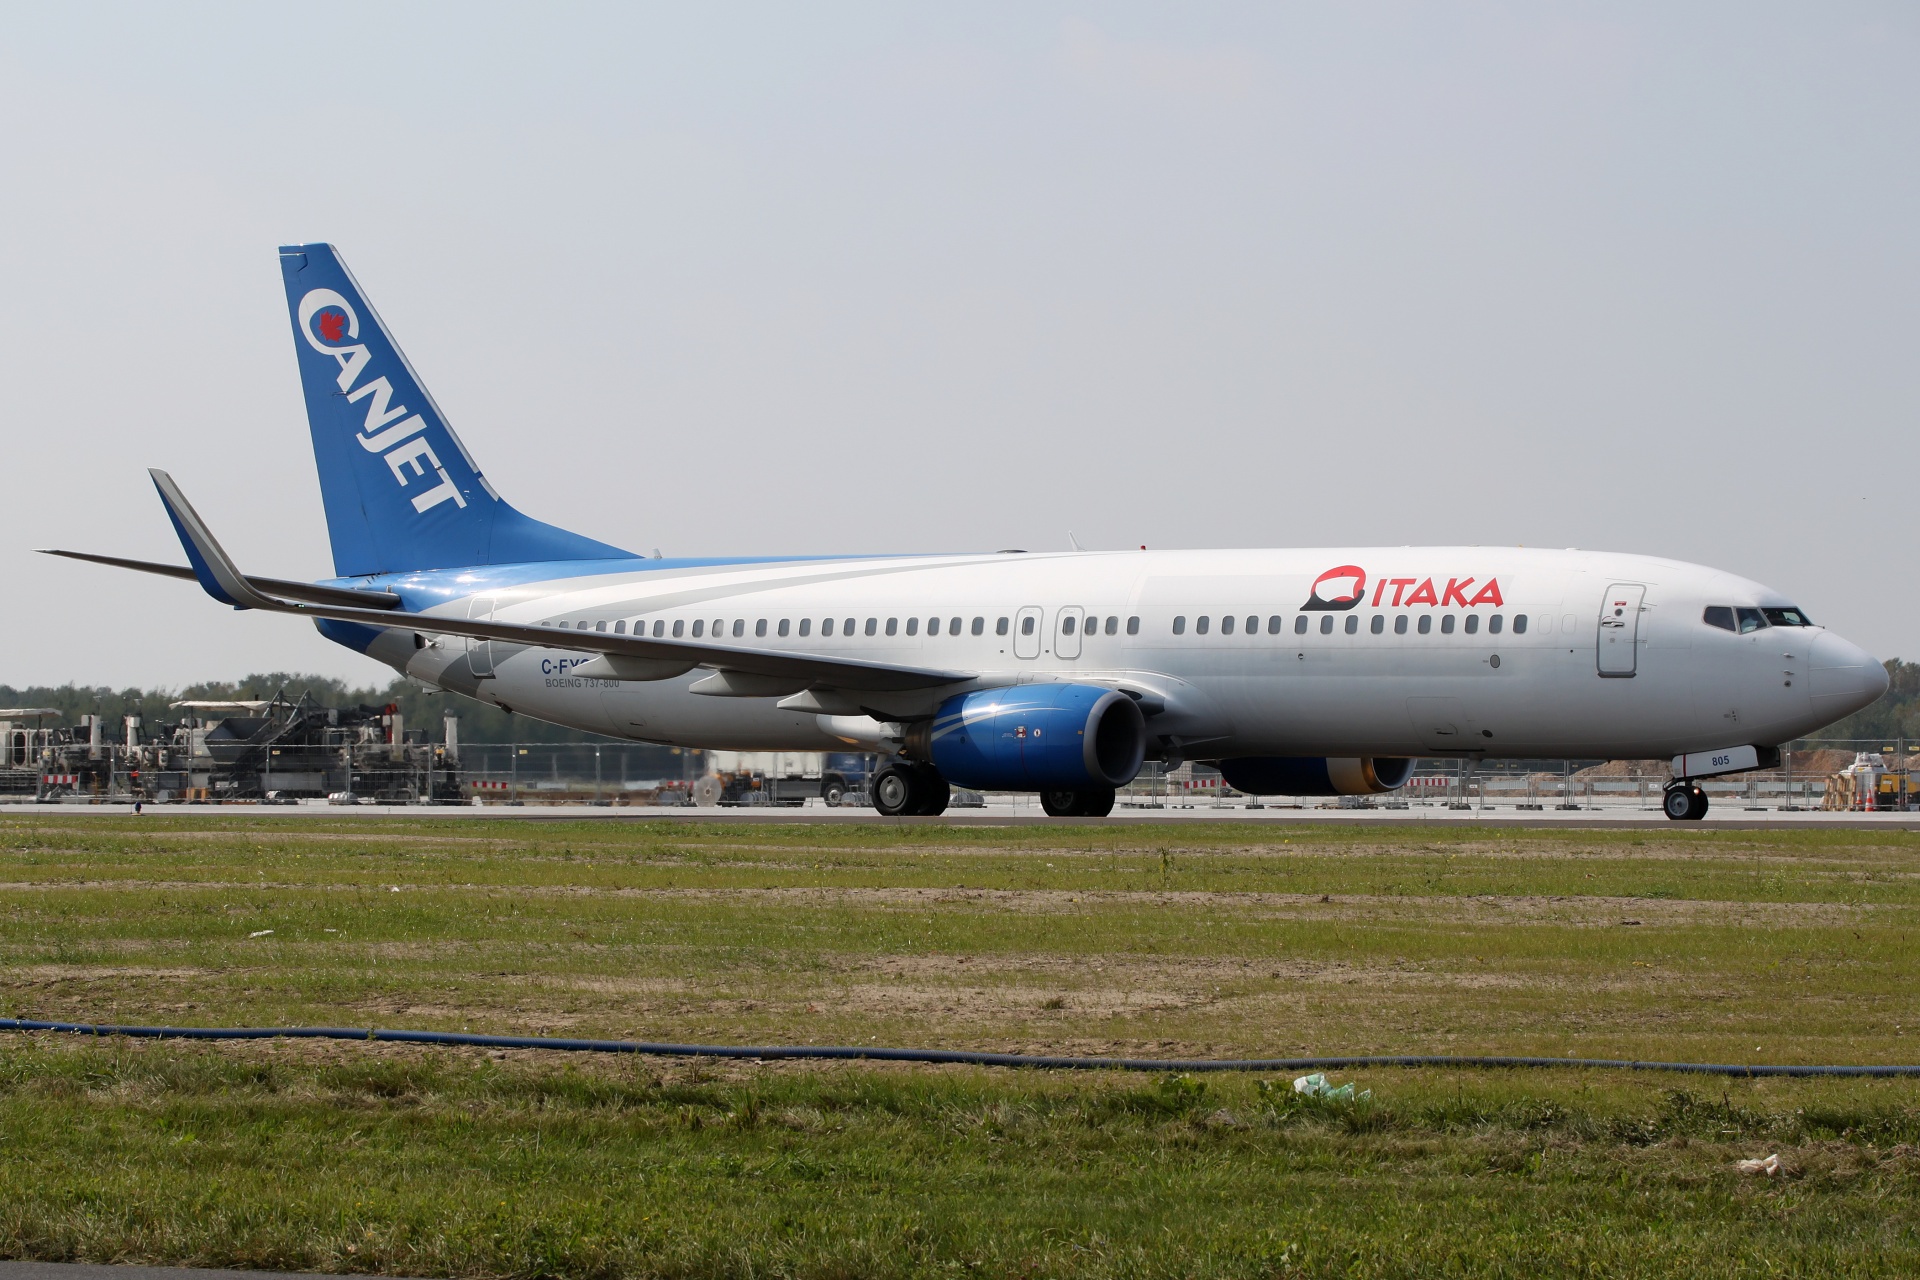 C-FYQO, CanJet (Itaka) (Aircraft » EPWA Spotting » Boeing 737-800)